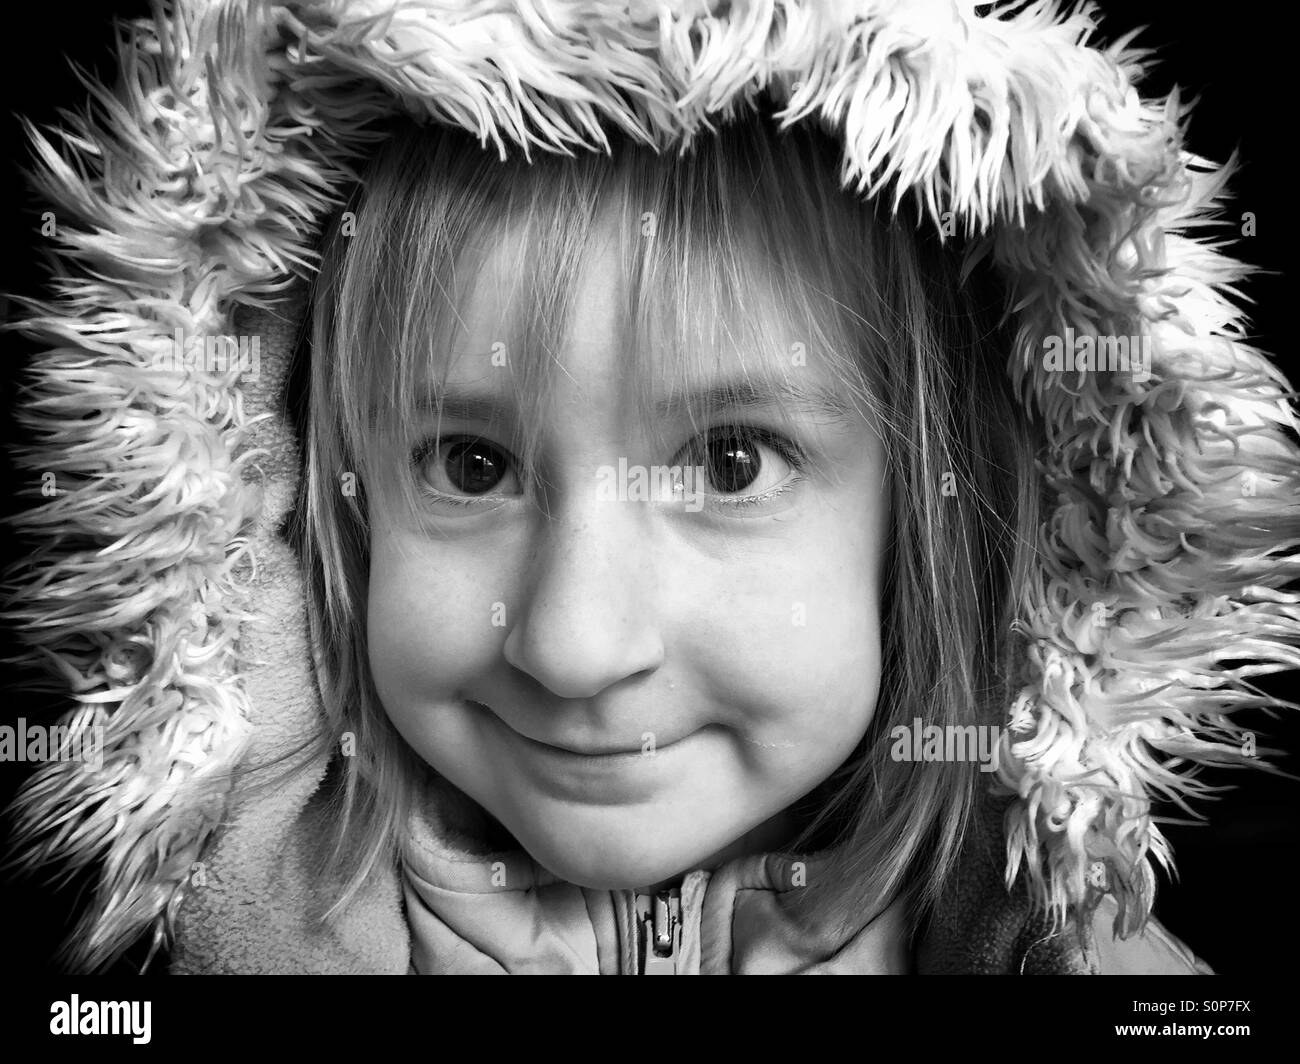 Girl in winter coat Stock Photo